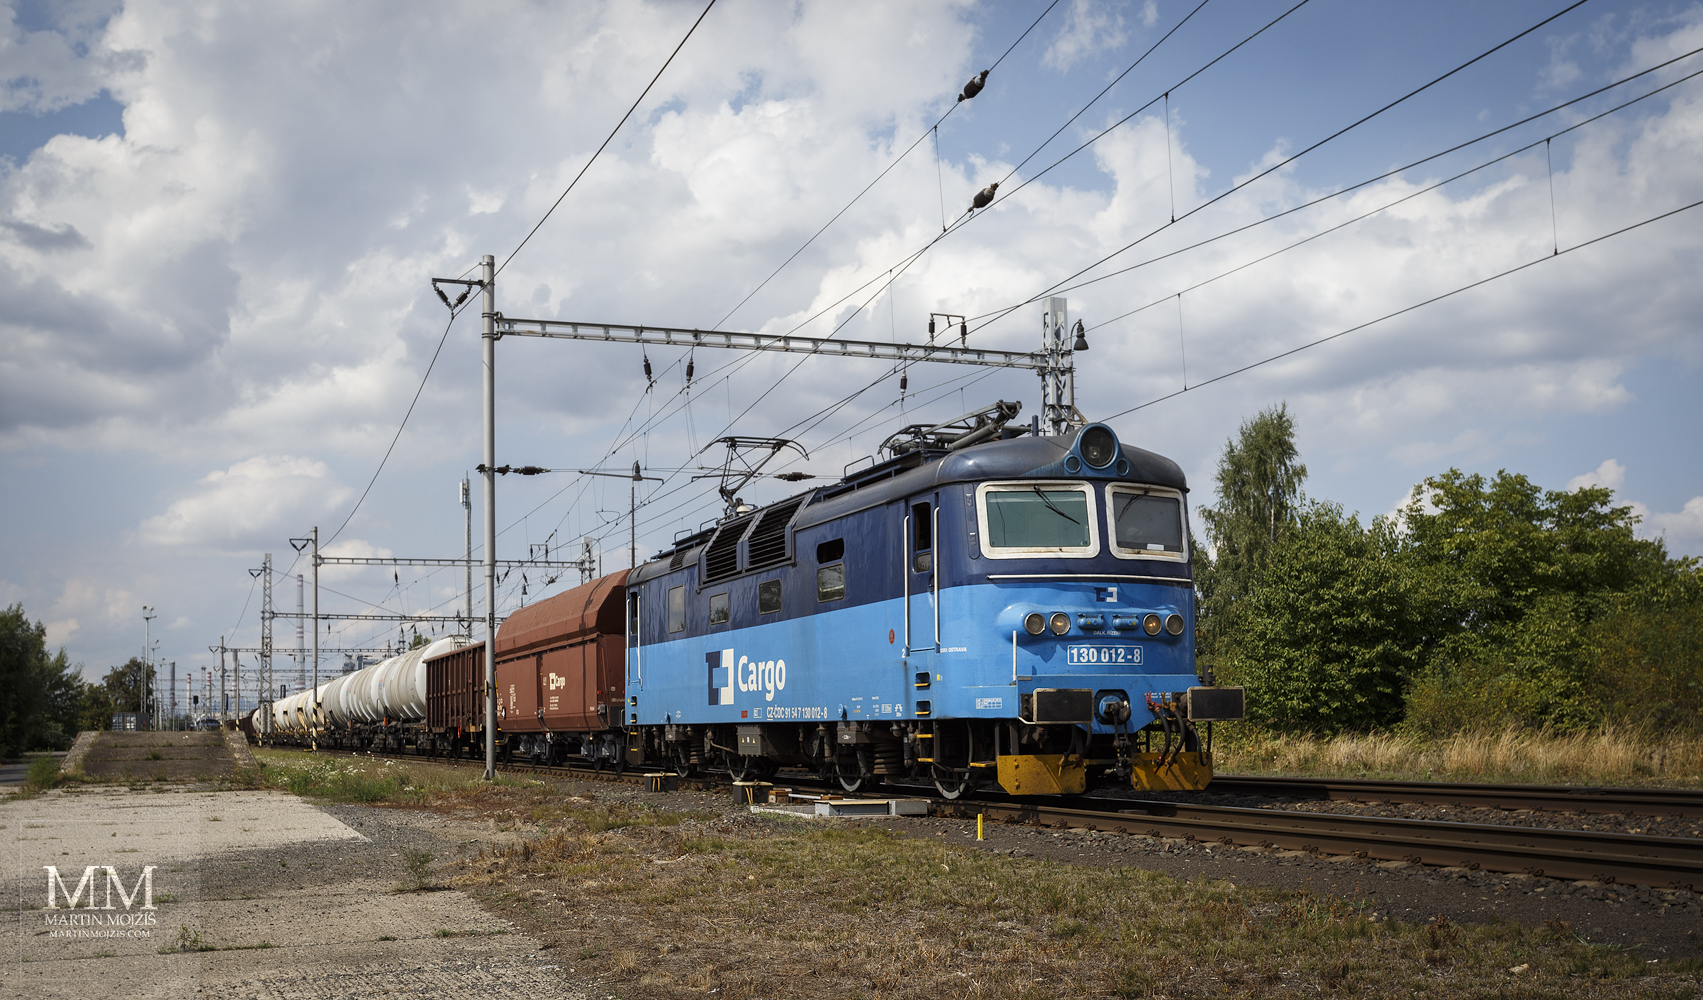 Electric locomotive 130 012-8 České dráhy Cargo.